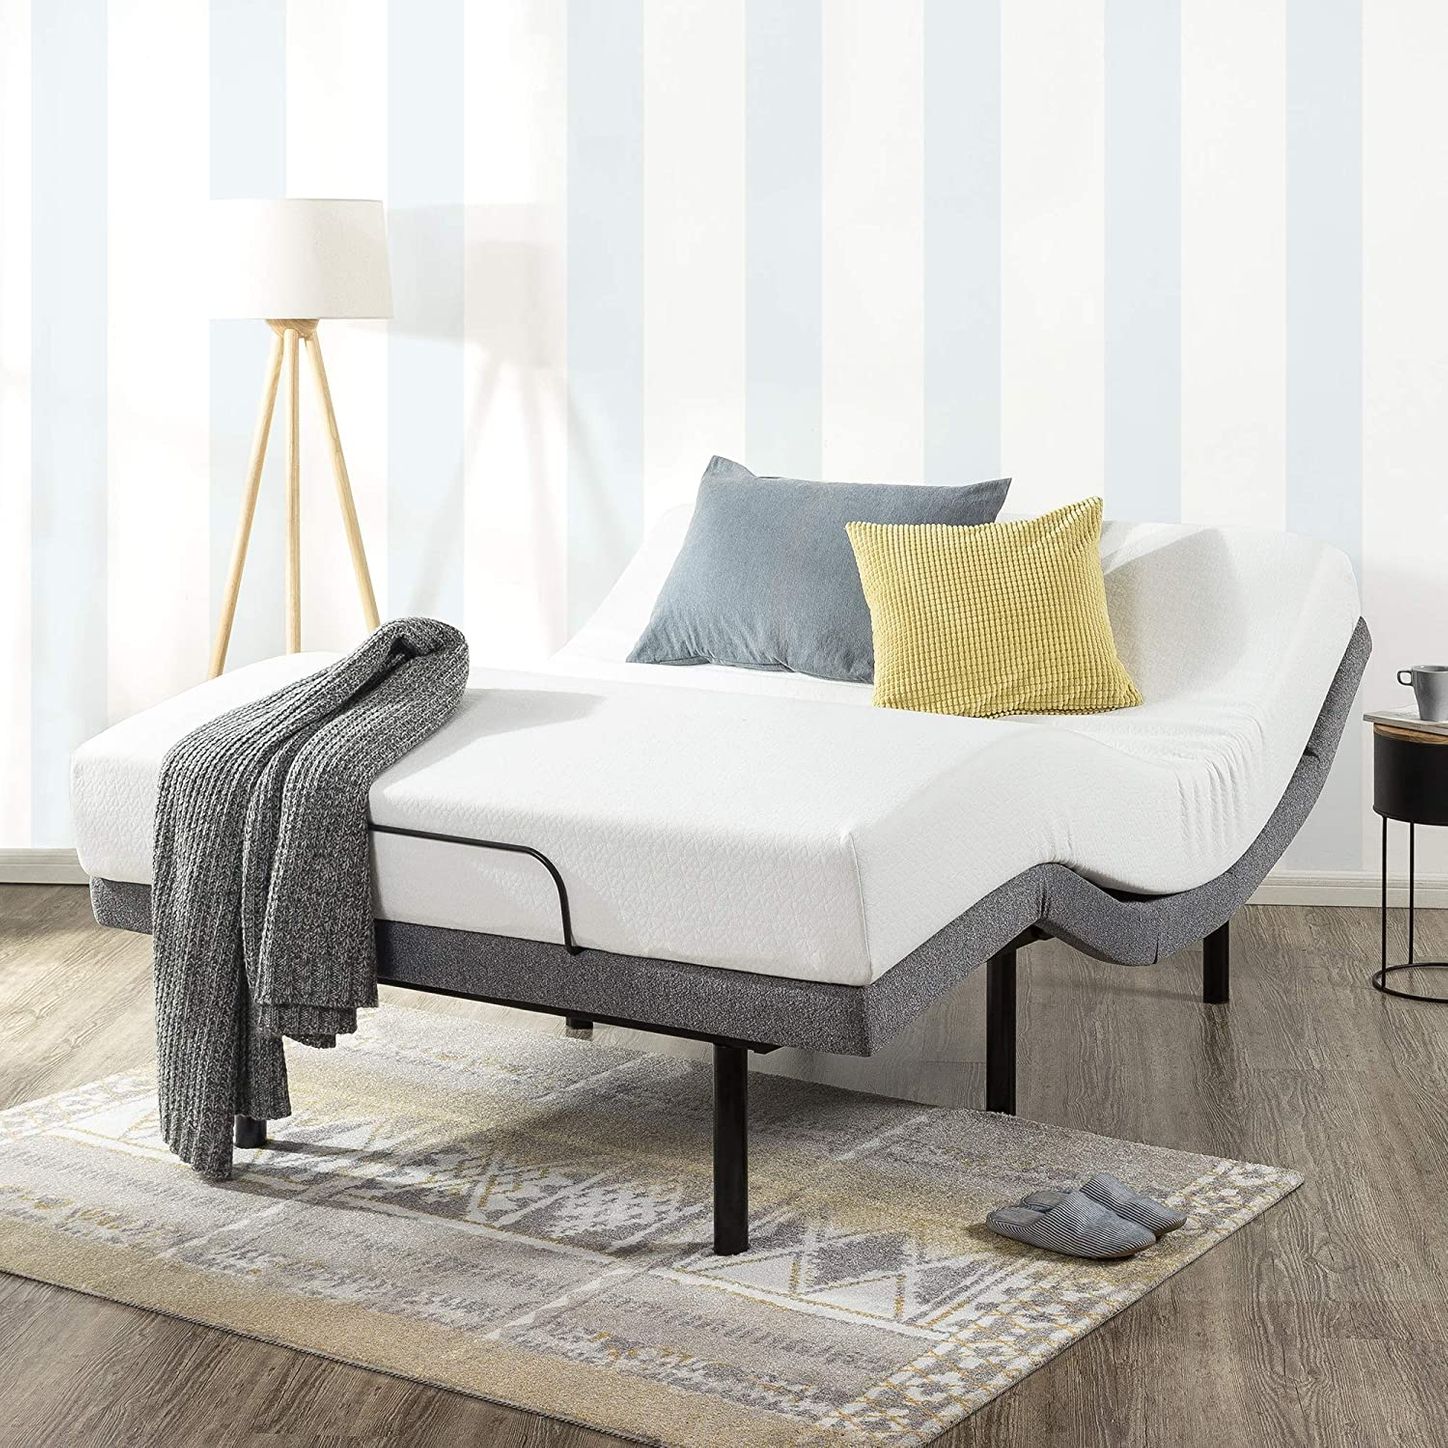 10 Best Adjustable Bed Bases 2022 The, Best Adjustable Base King Bed